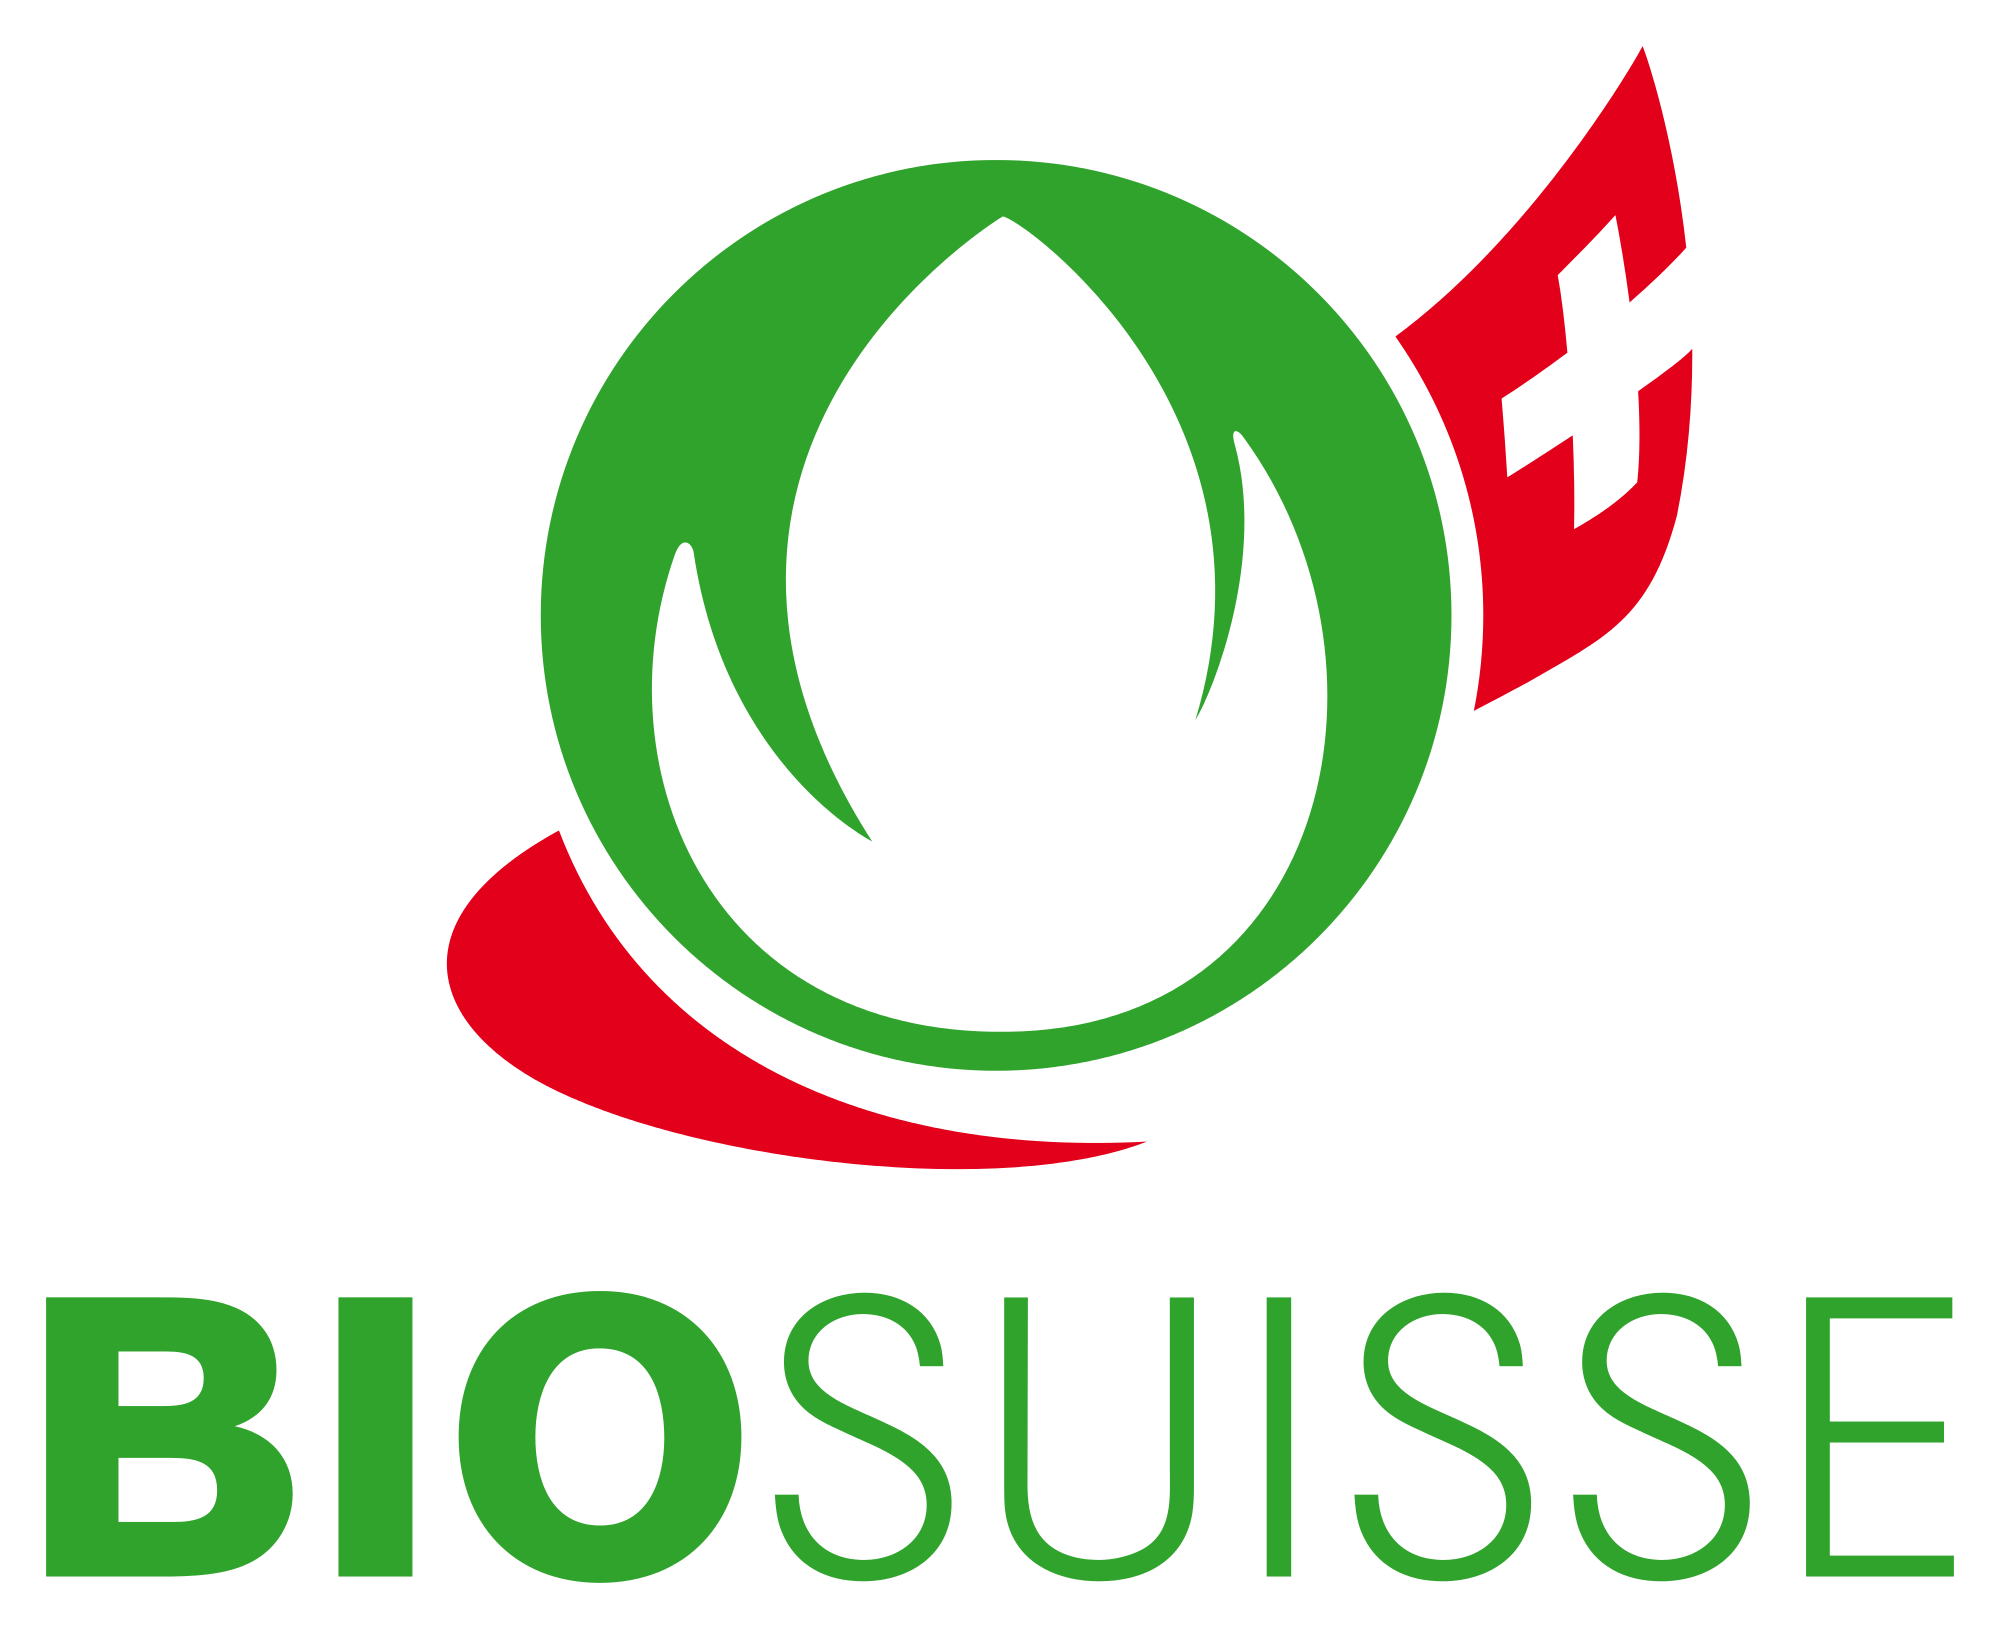 11bio_suisse_201x_logo